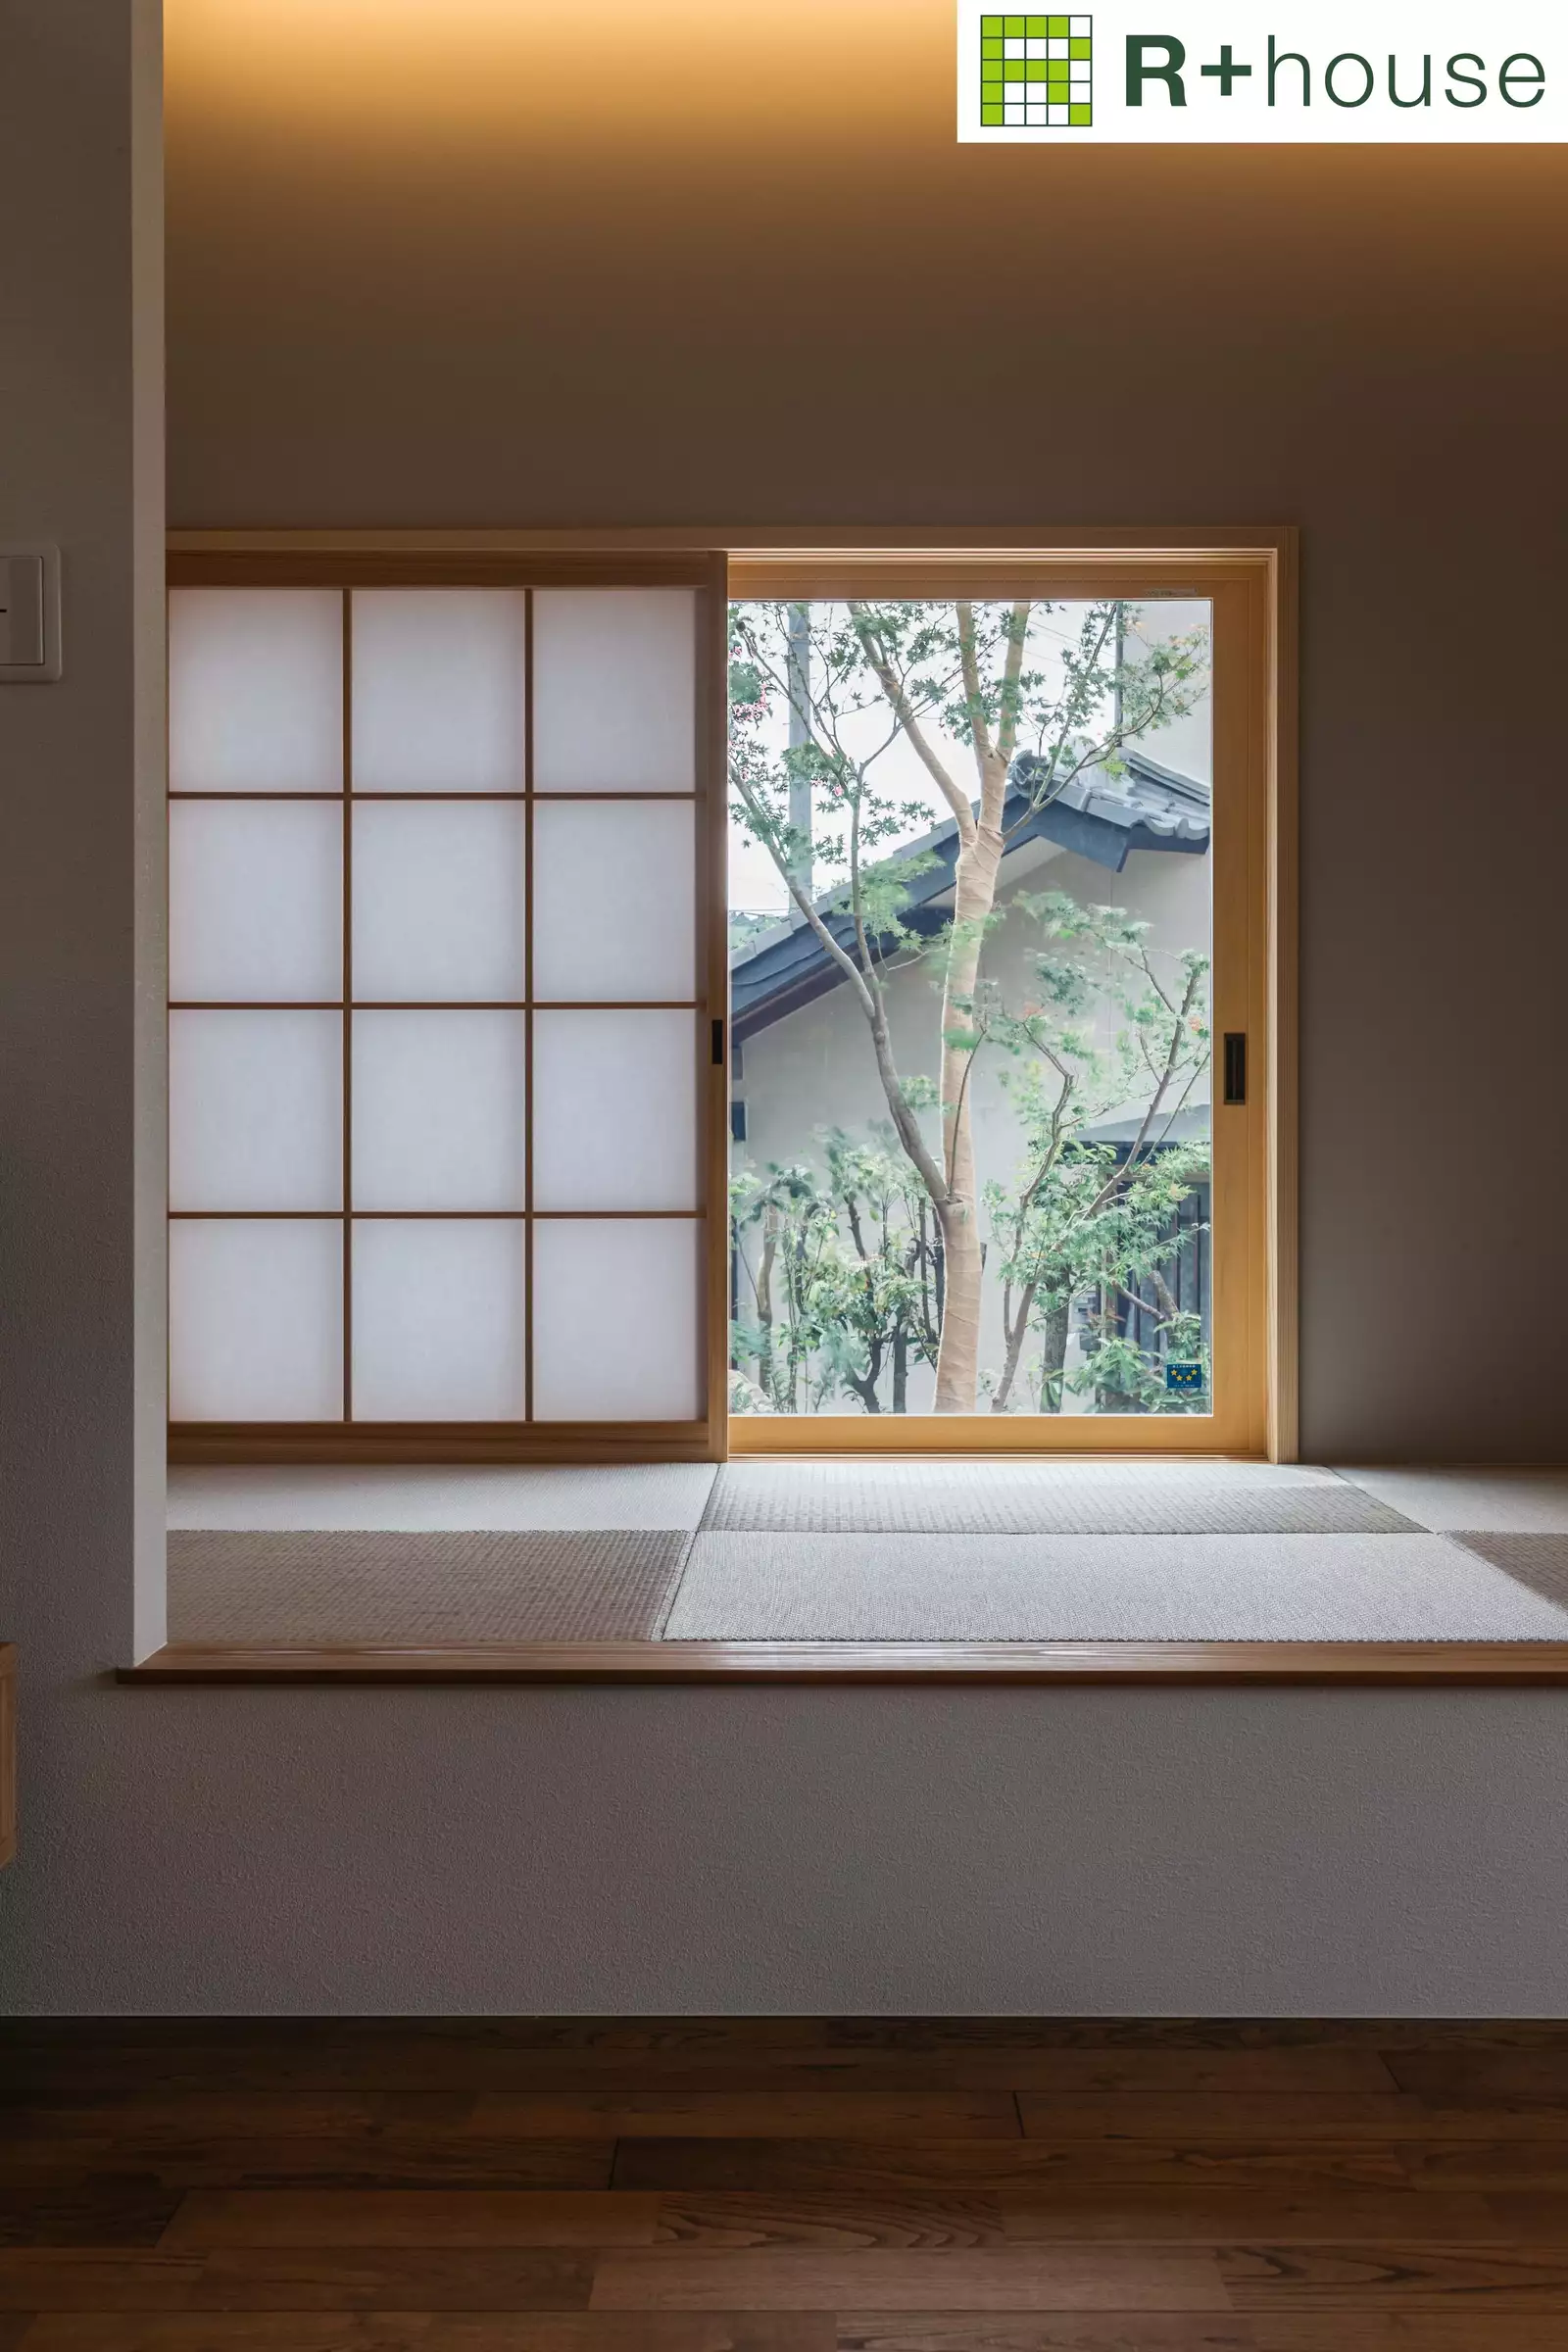 R+houseの物件の和室の写真です。琉球畳に障子と窓、その向こうに木があります。